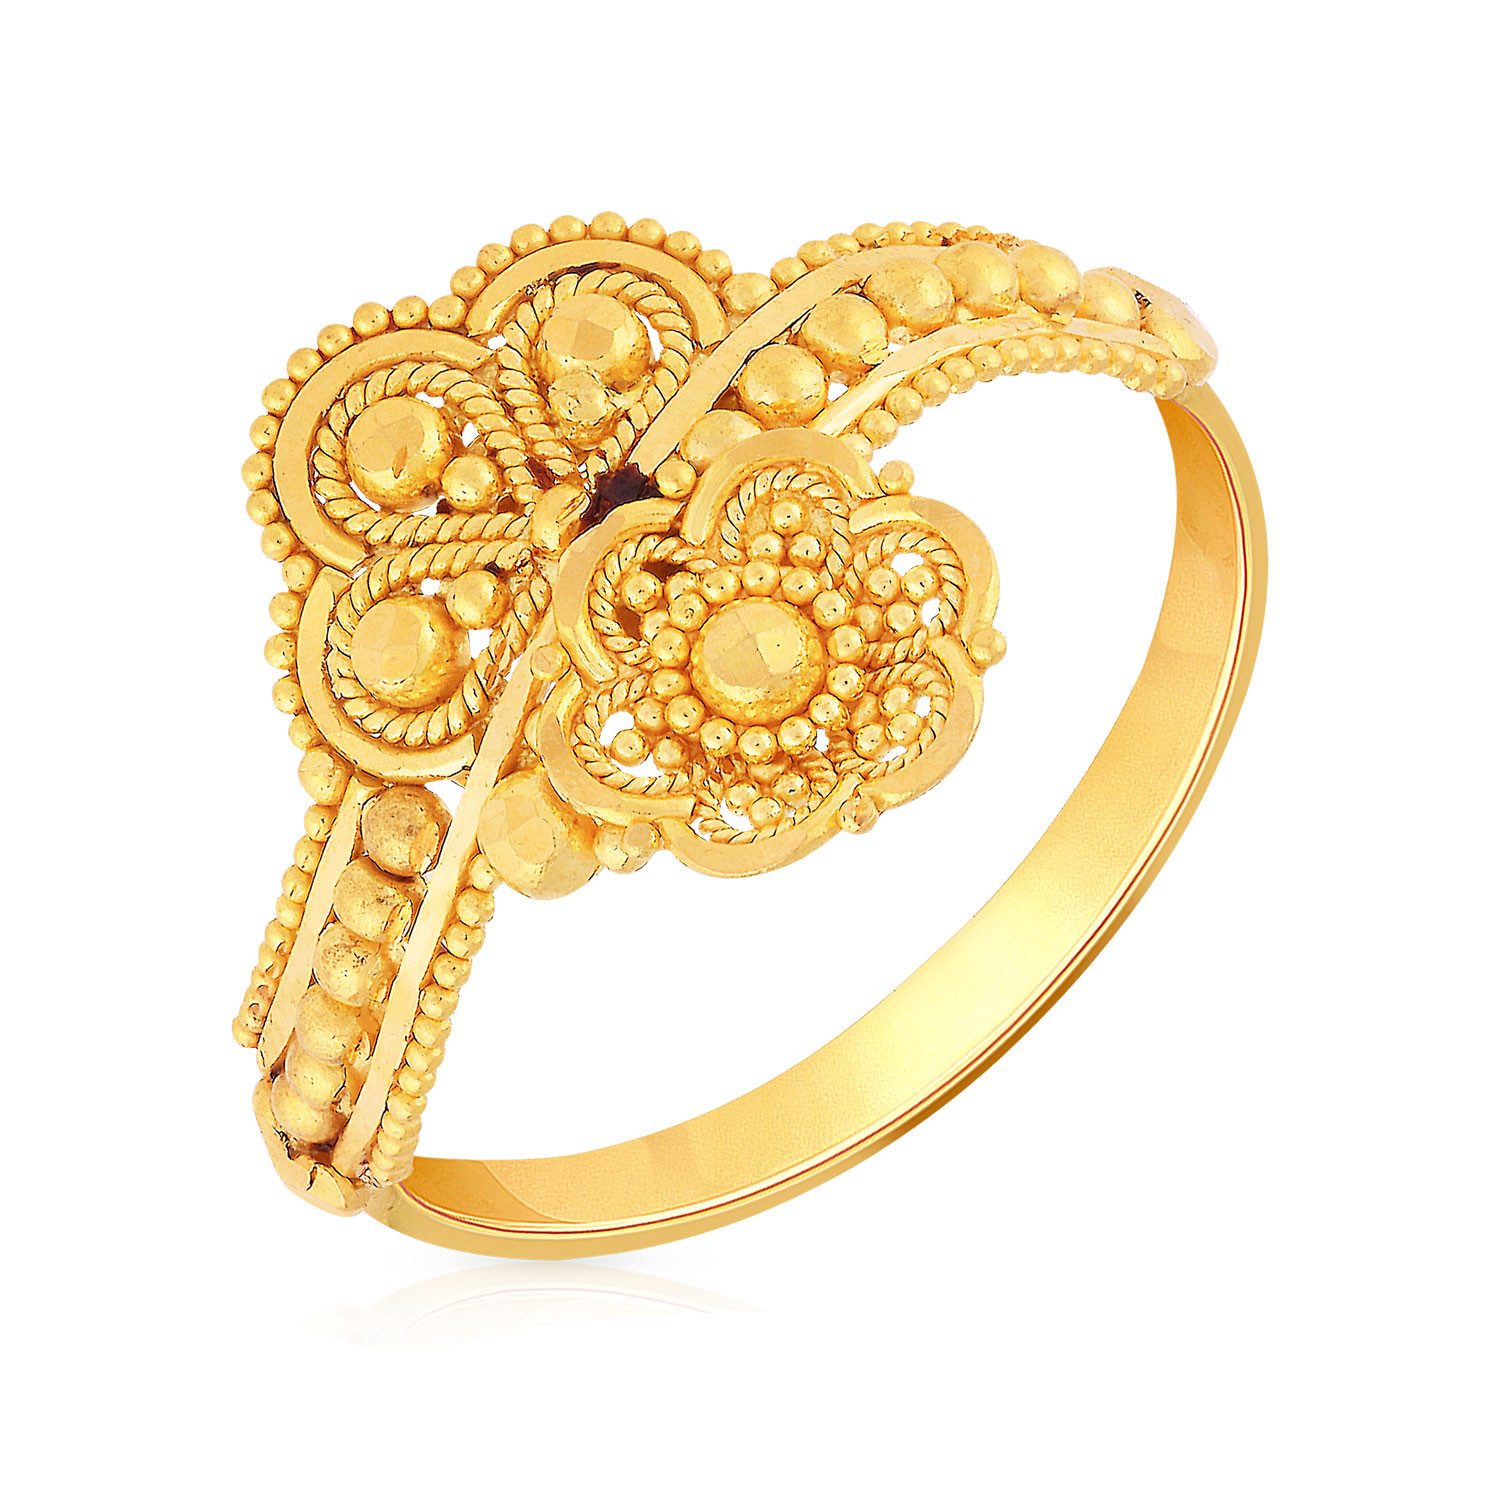 Buy Malabar Gold Ring FAWAAAAACHNW for Women Online | Malabar Gold ...